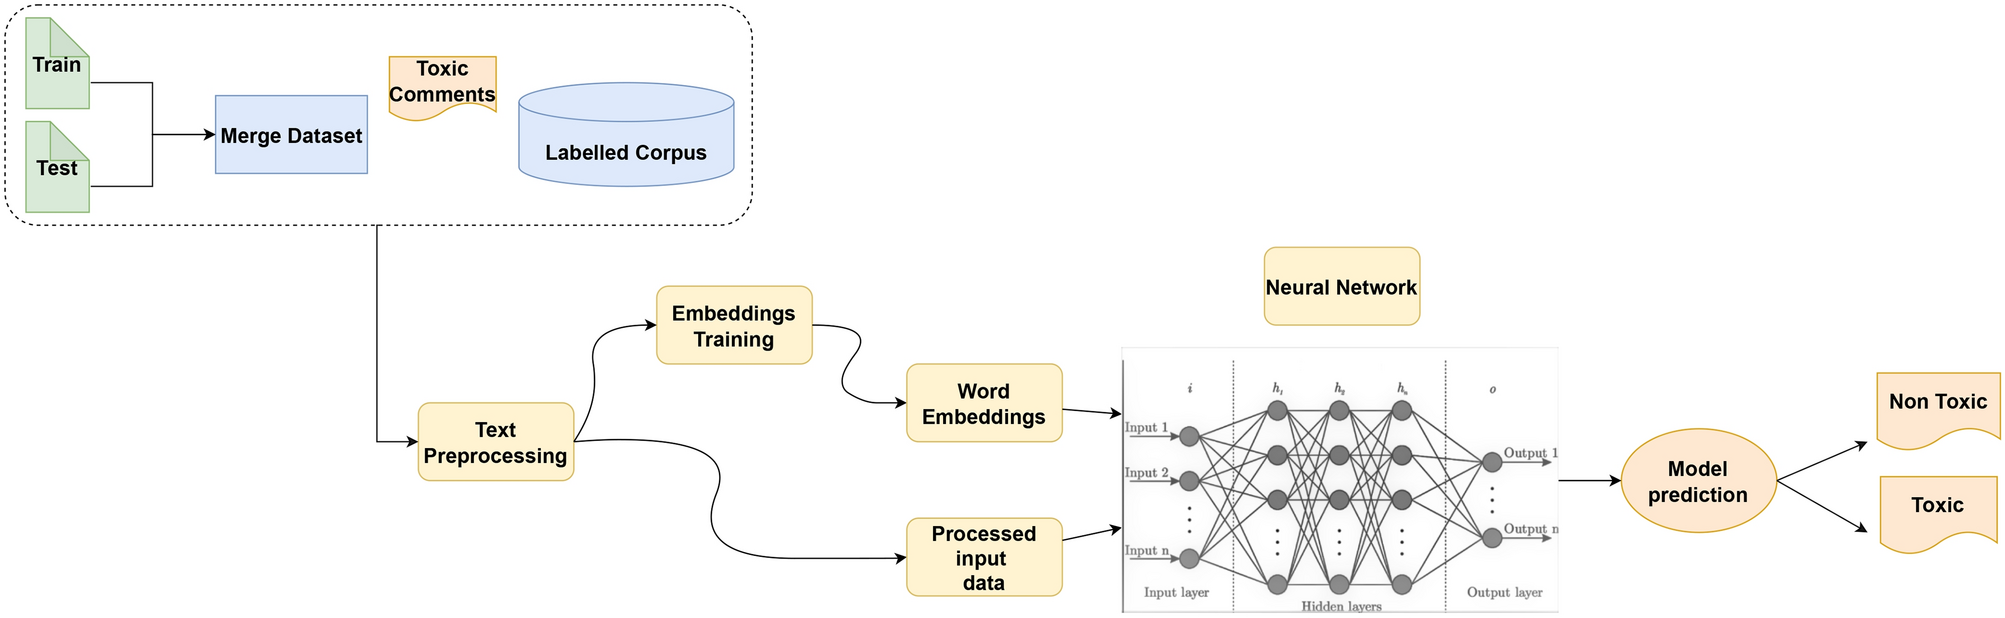 NLP- EDA, Bag of words, TF-IDF, Baseline model | Kaggle